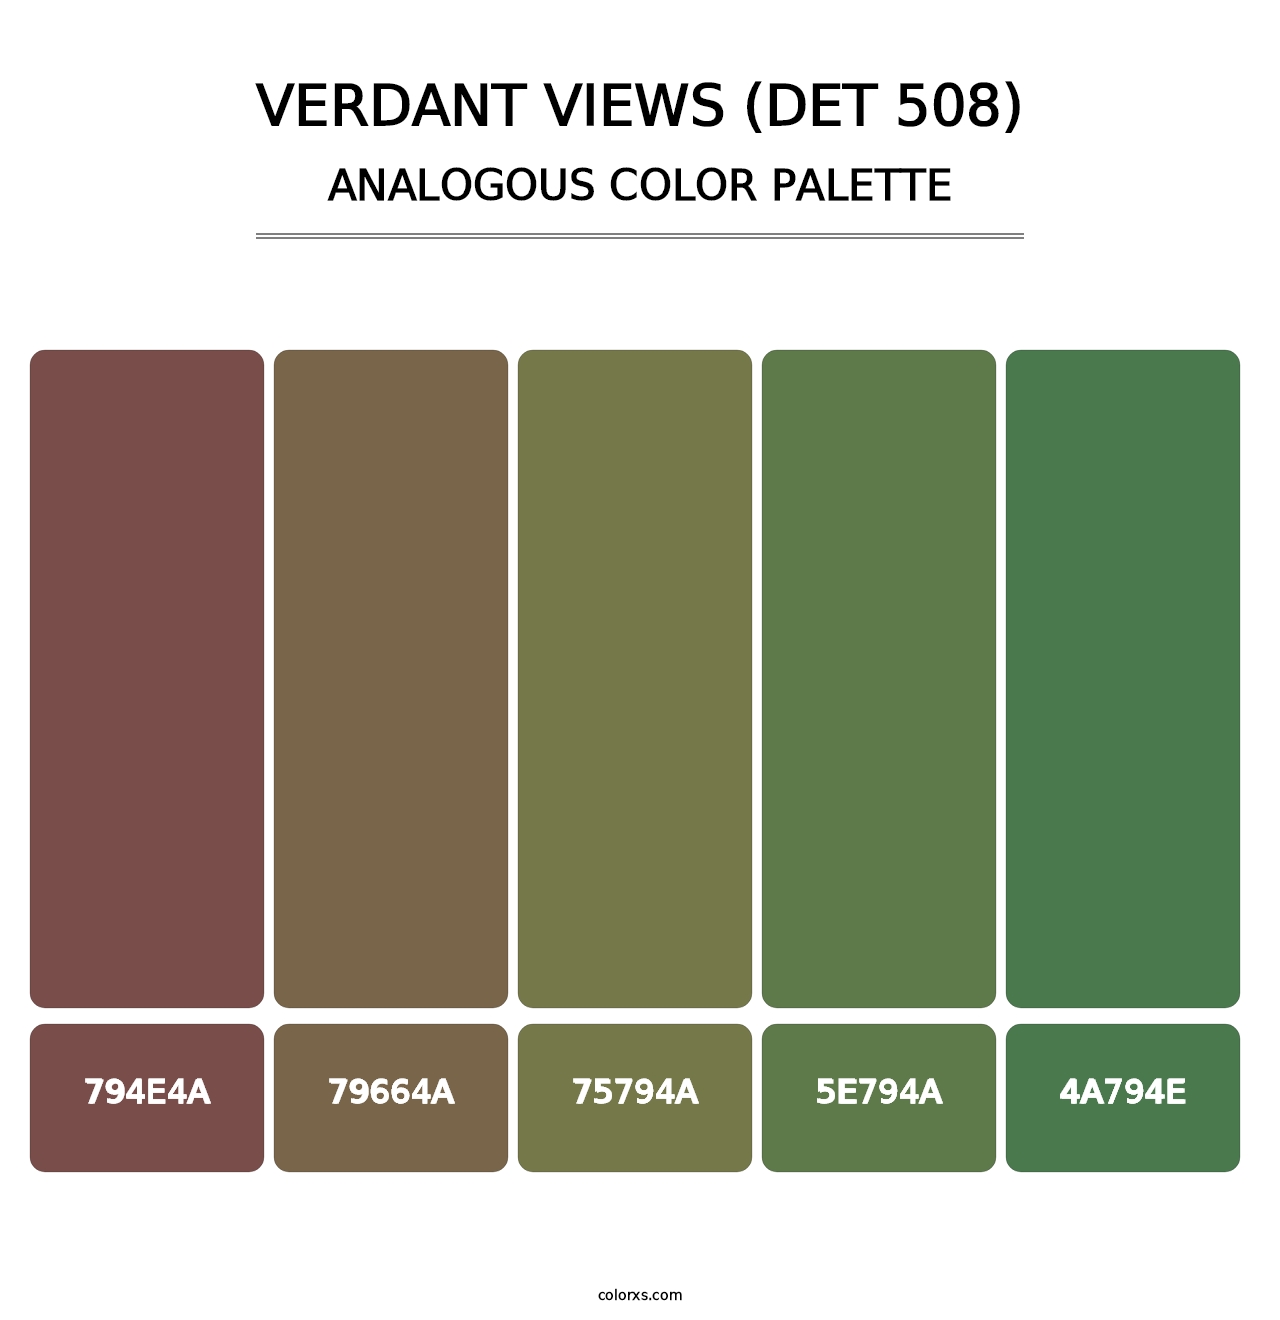 Verdant Views (DET 508) - Analogous Color Palette